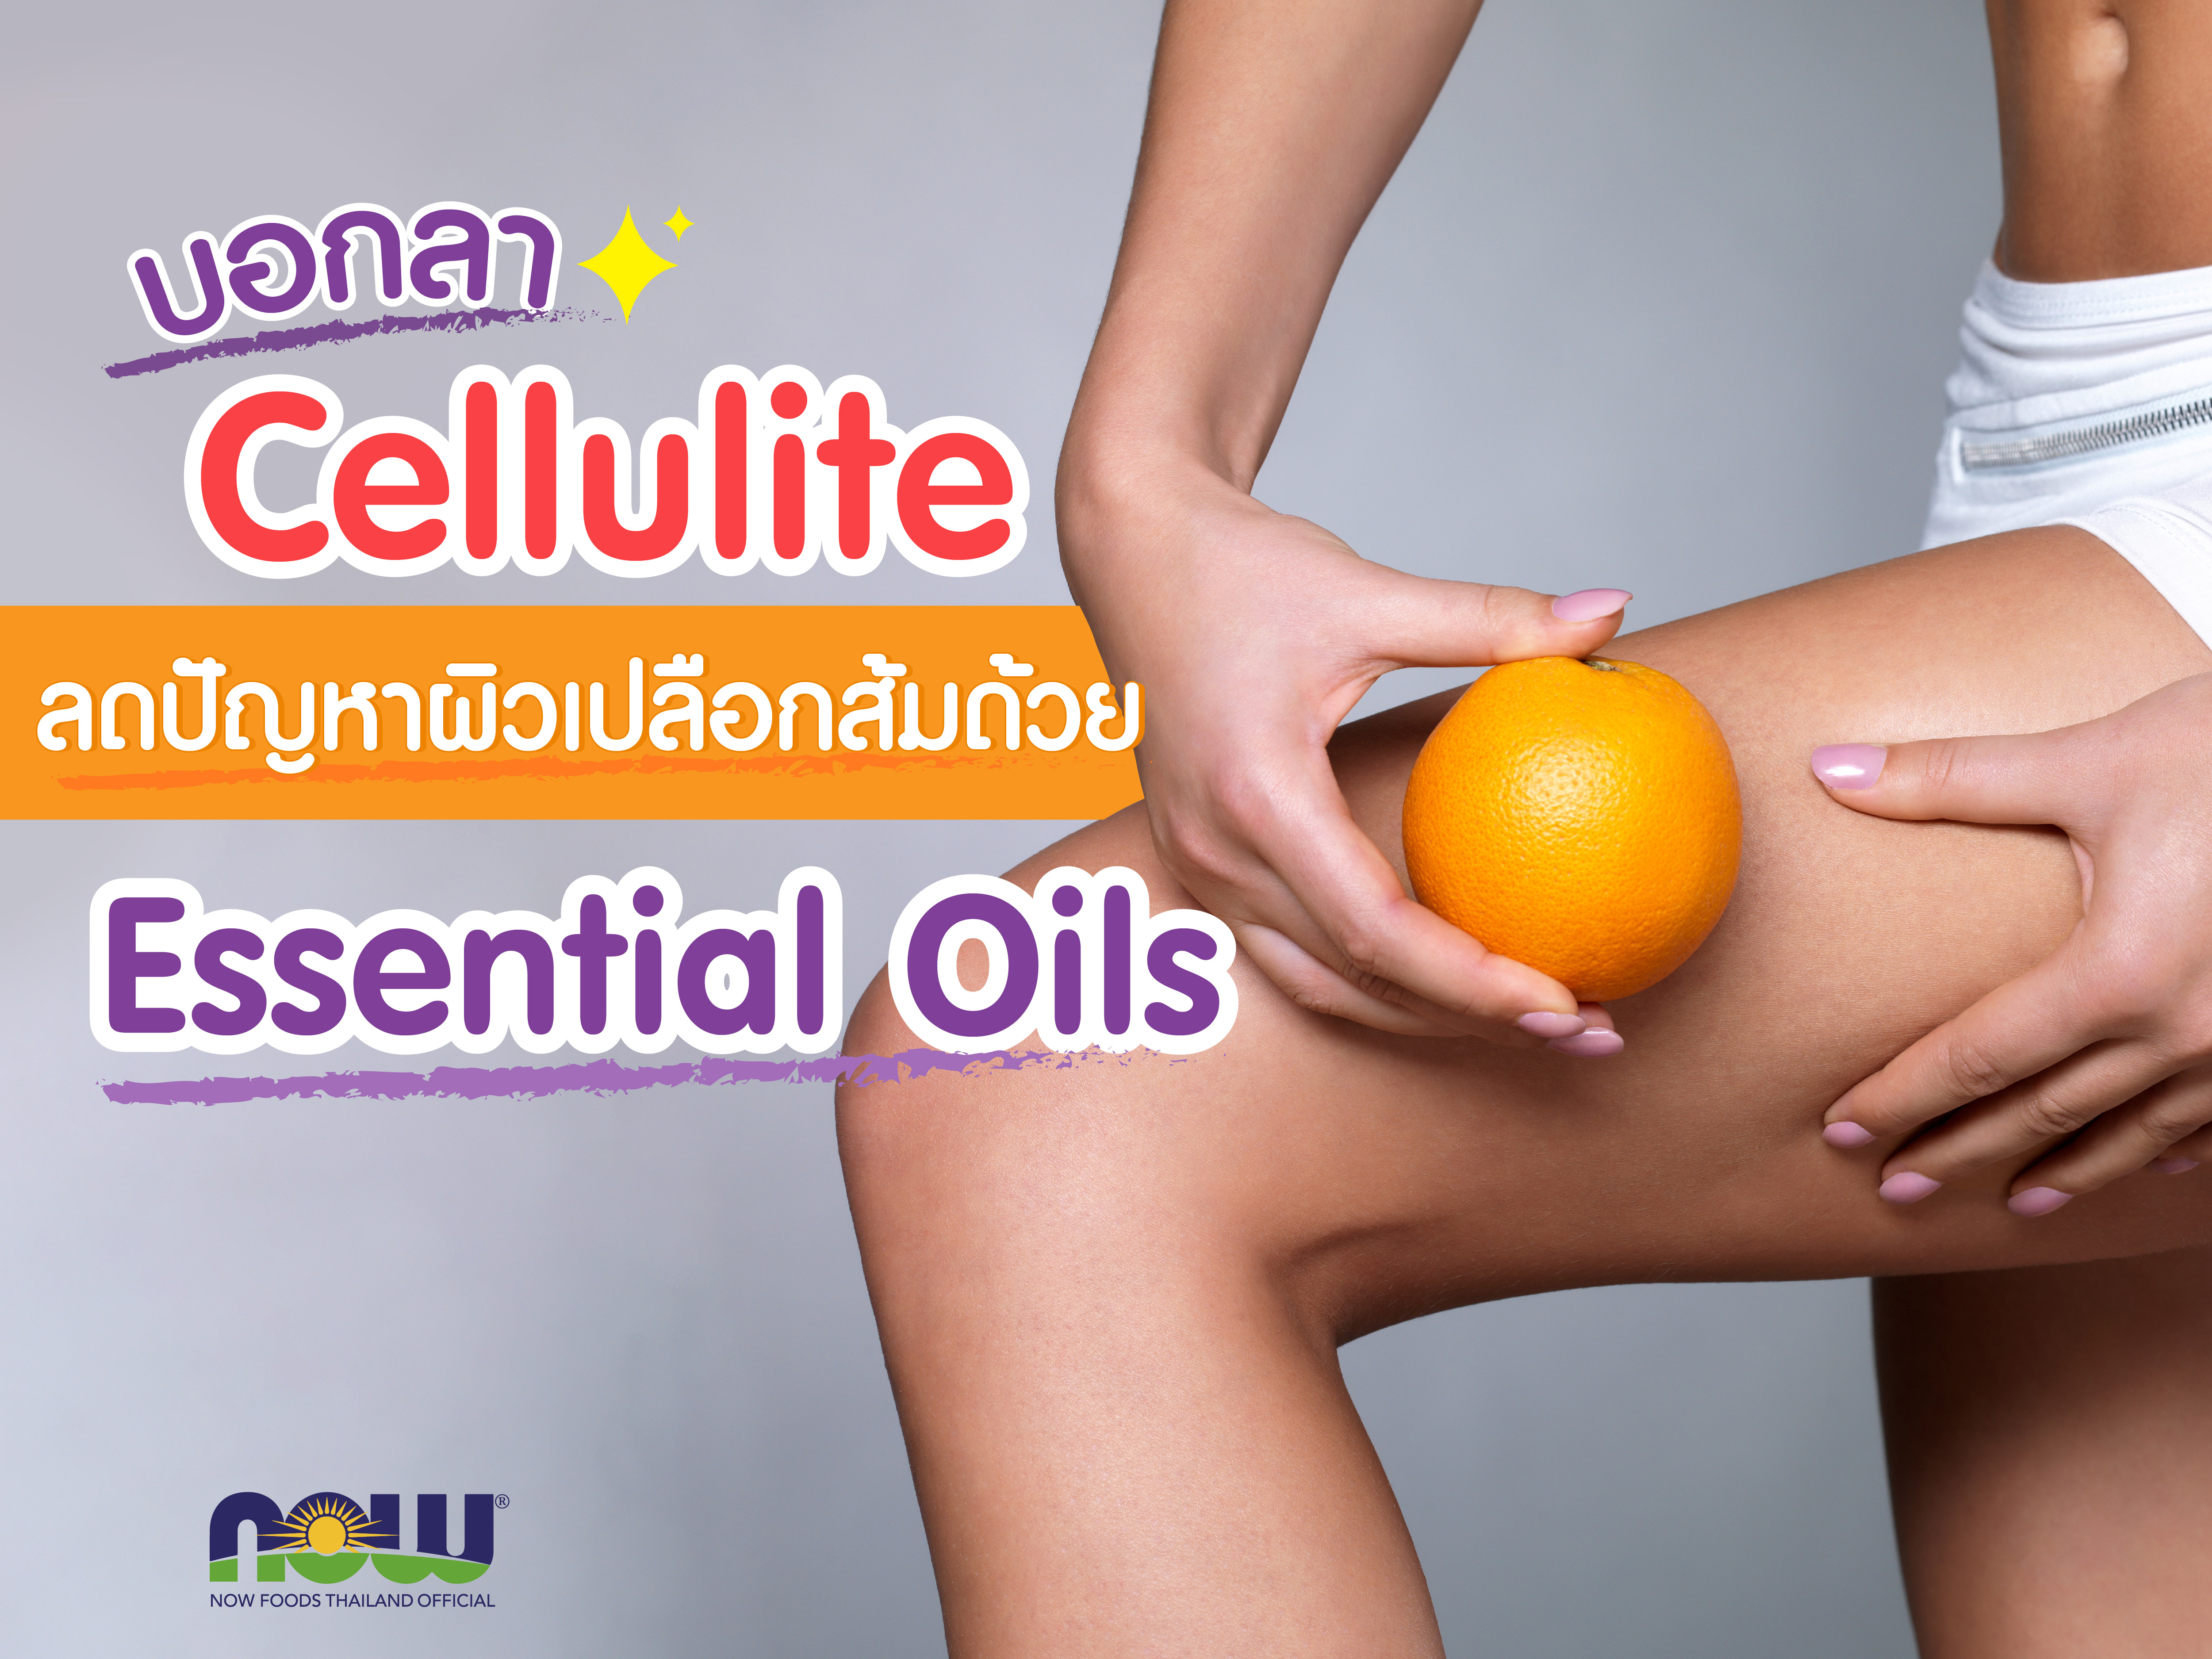 บอกลา Cellulite ลดปัญหาผิวเปลือกส้มด้วย Essential Oils